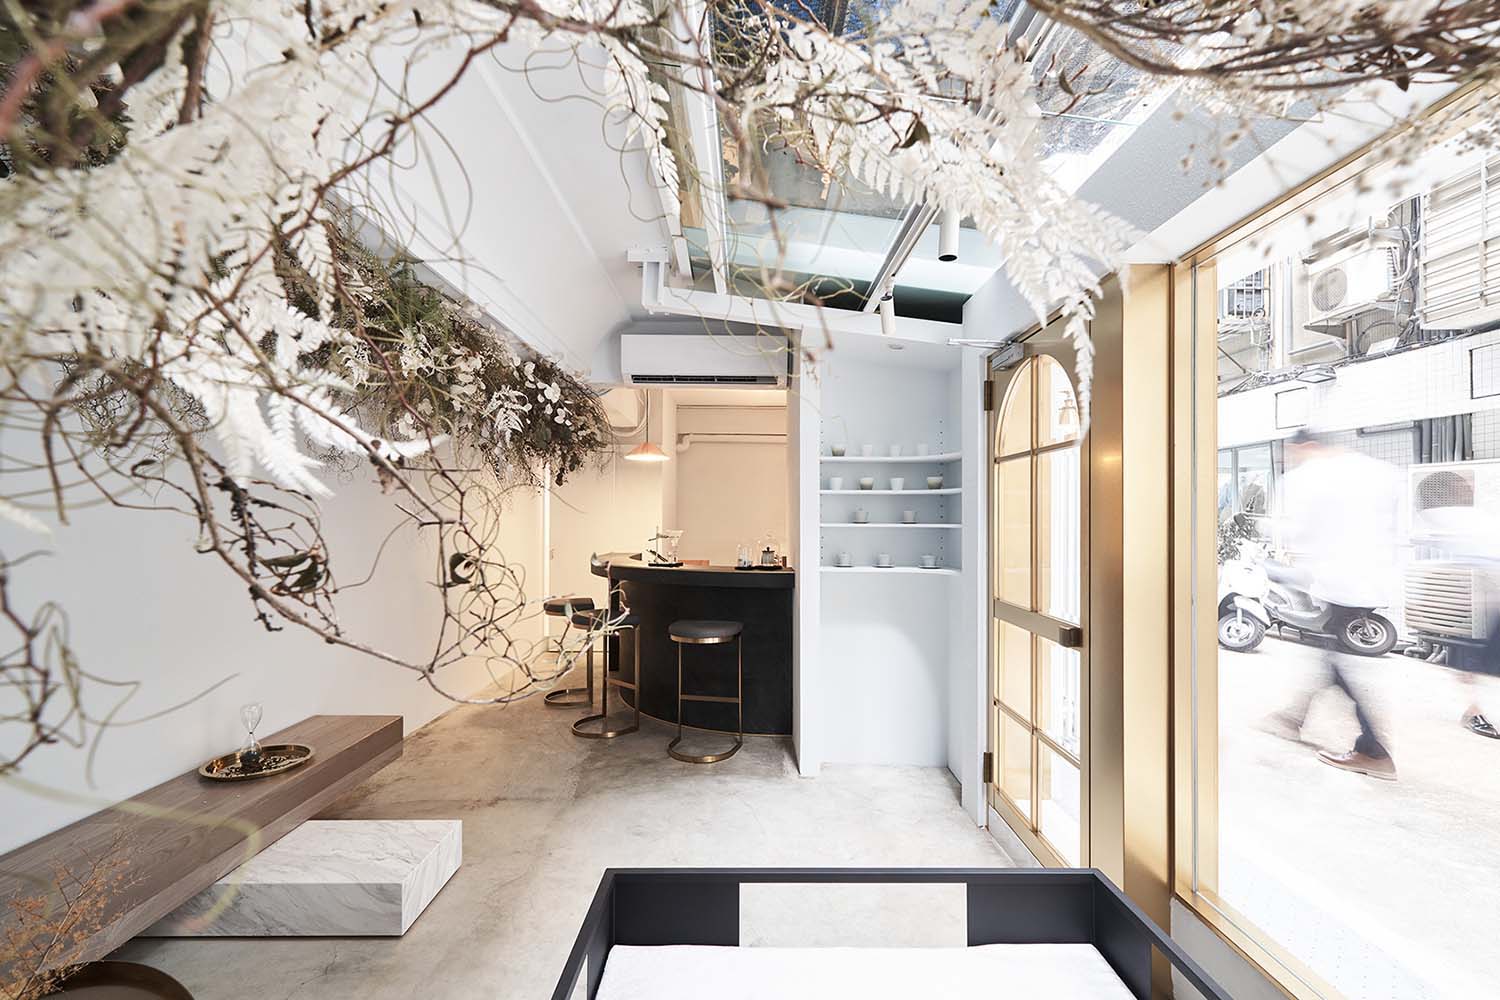 干沙龙由蒂姆•陈商业空间在室内空间和展览设计类别,2019 - 2020。